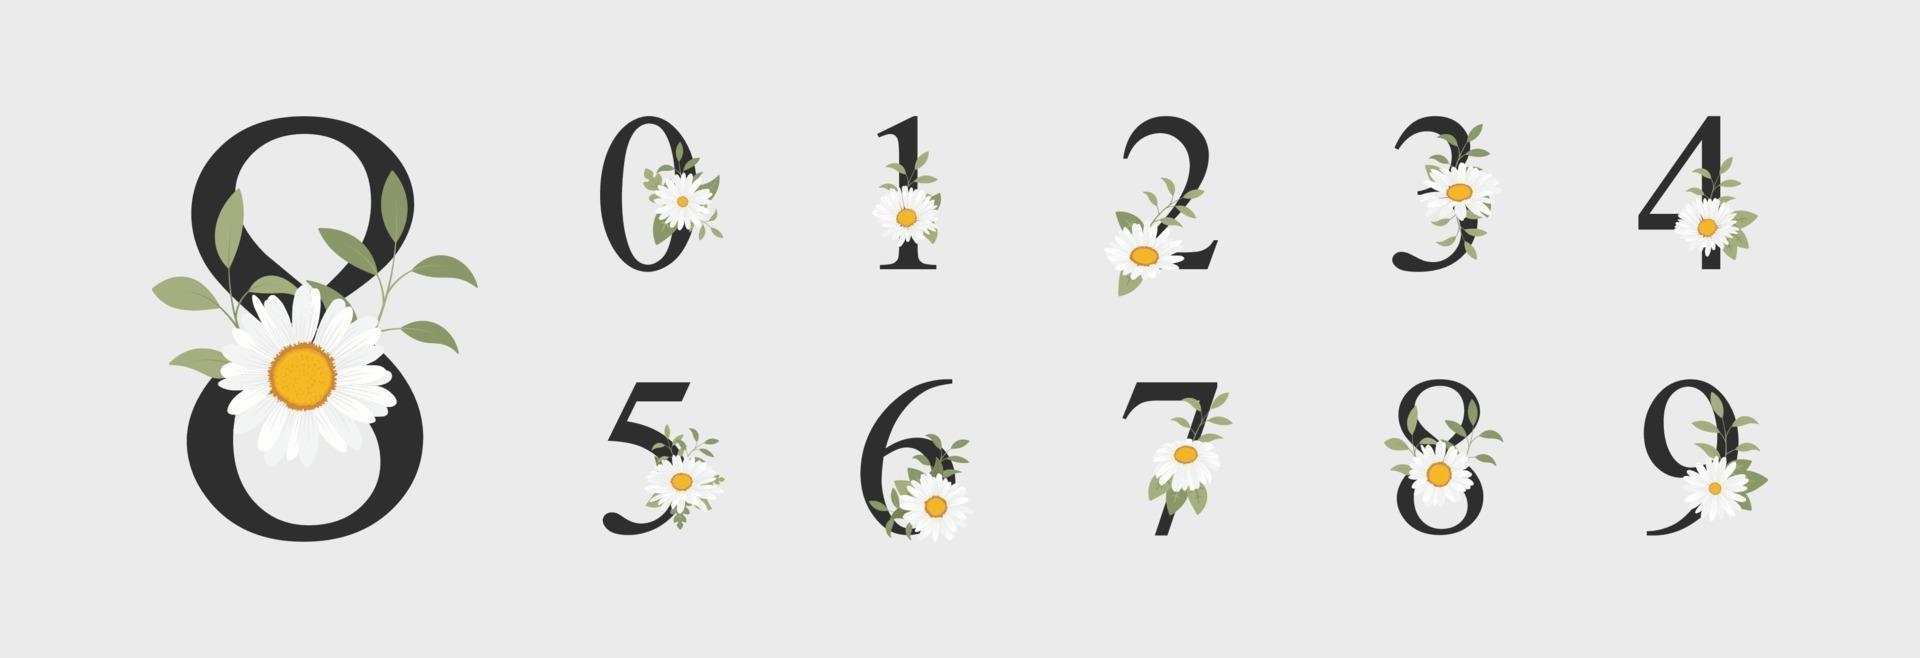 Hermosa decoración de números para bodas con flores. vector